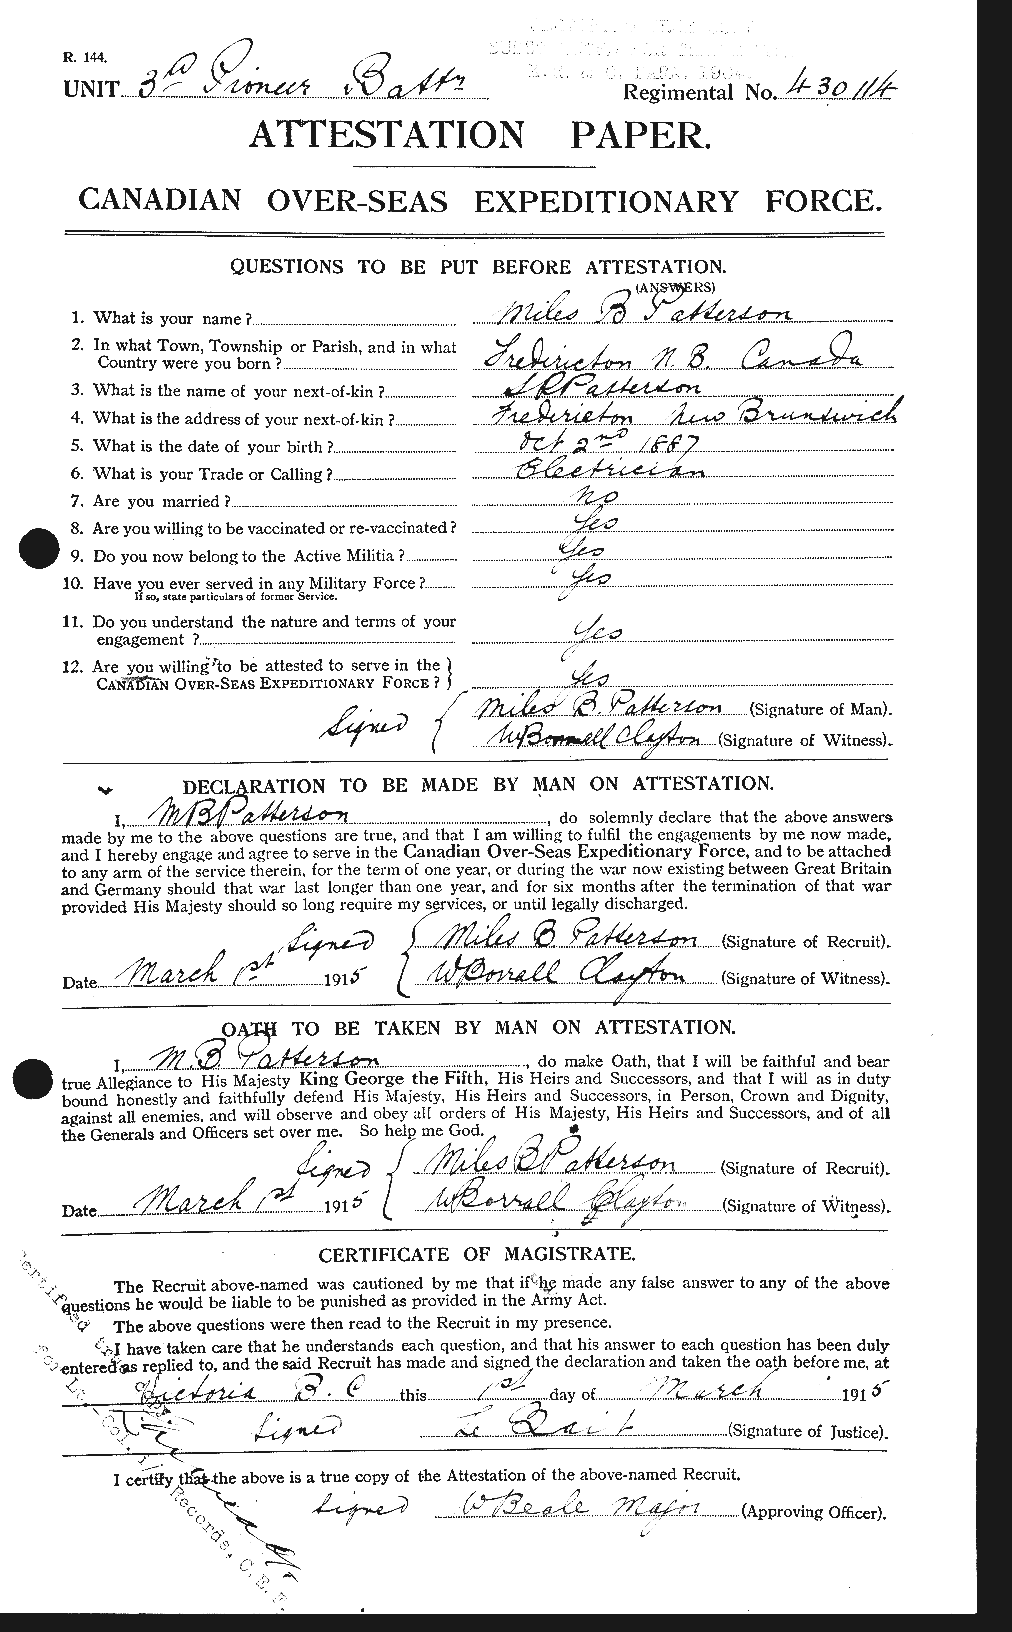 Dossiers du Personnel de la Première Guerre mondiale - CEC 568662a